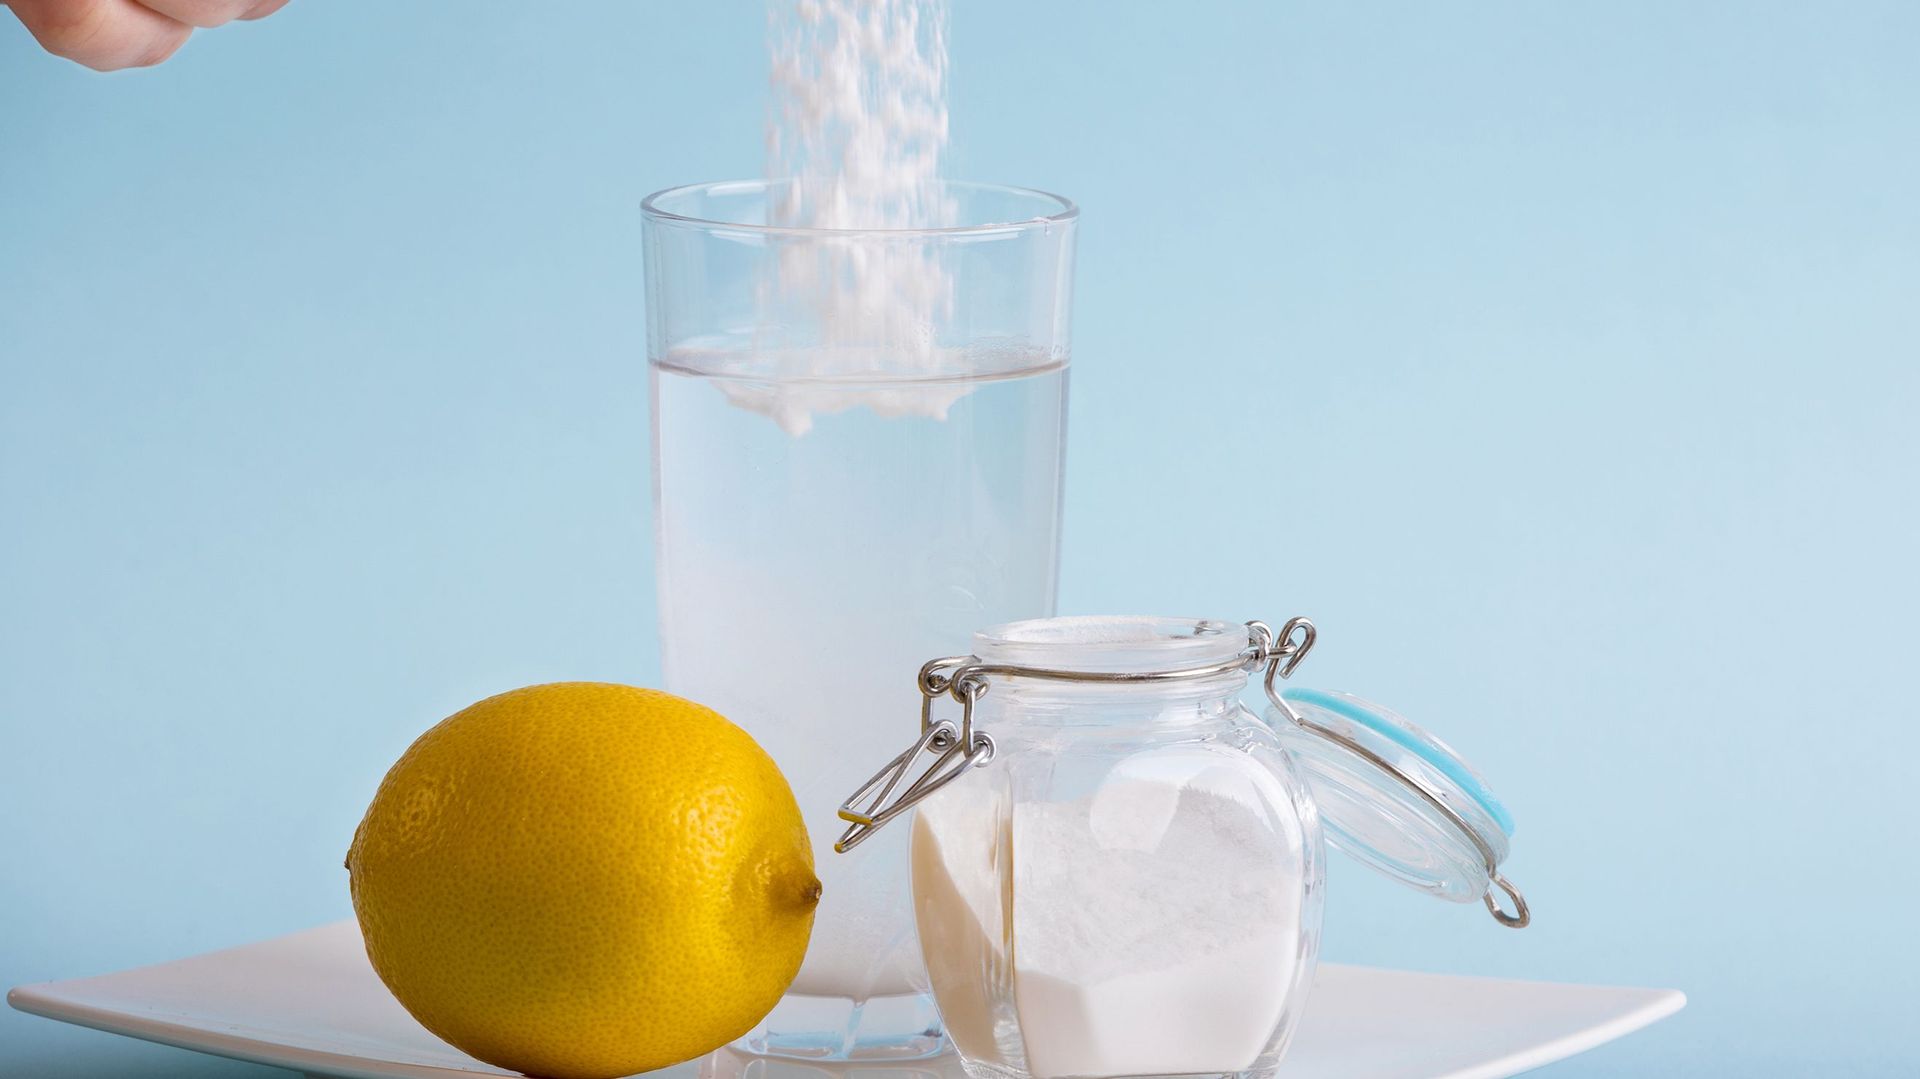 Ajouter du bicarbonate de soude et du sel dans son verre d’eau permettrait de perdre du poids et de la cellulite, selon certains tiktokeurs.